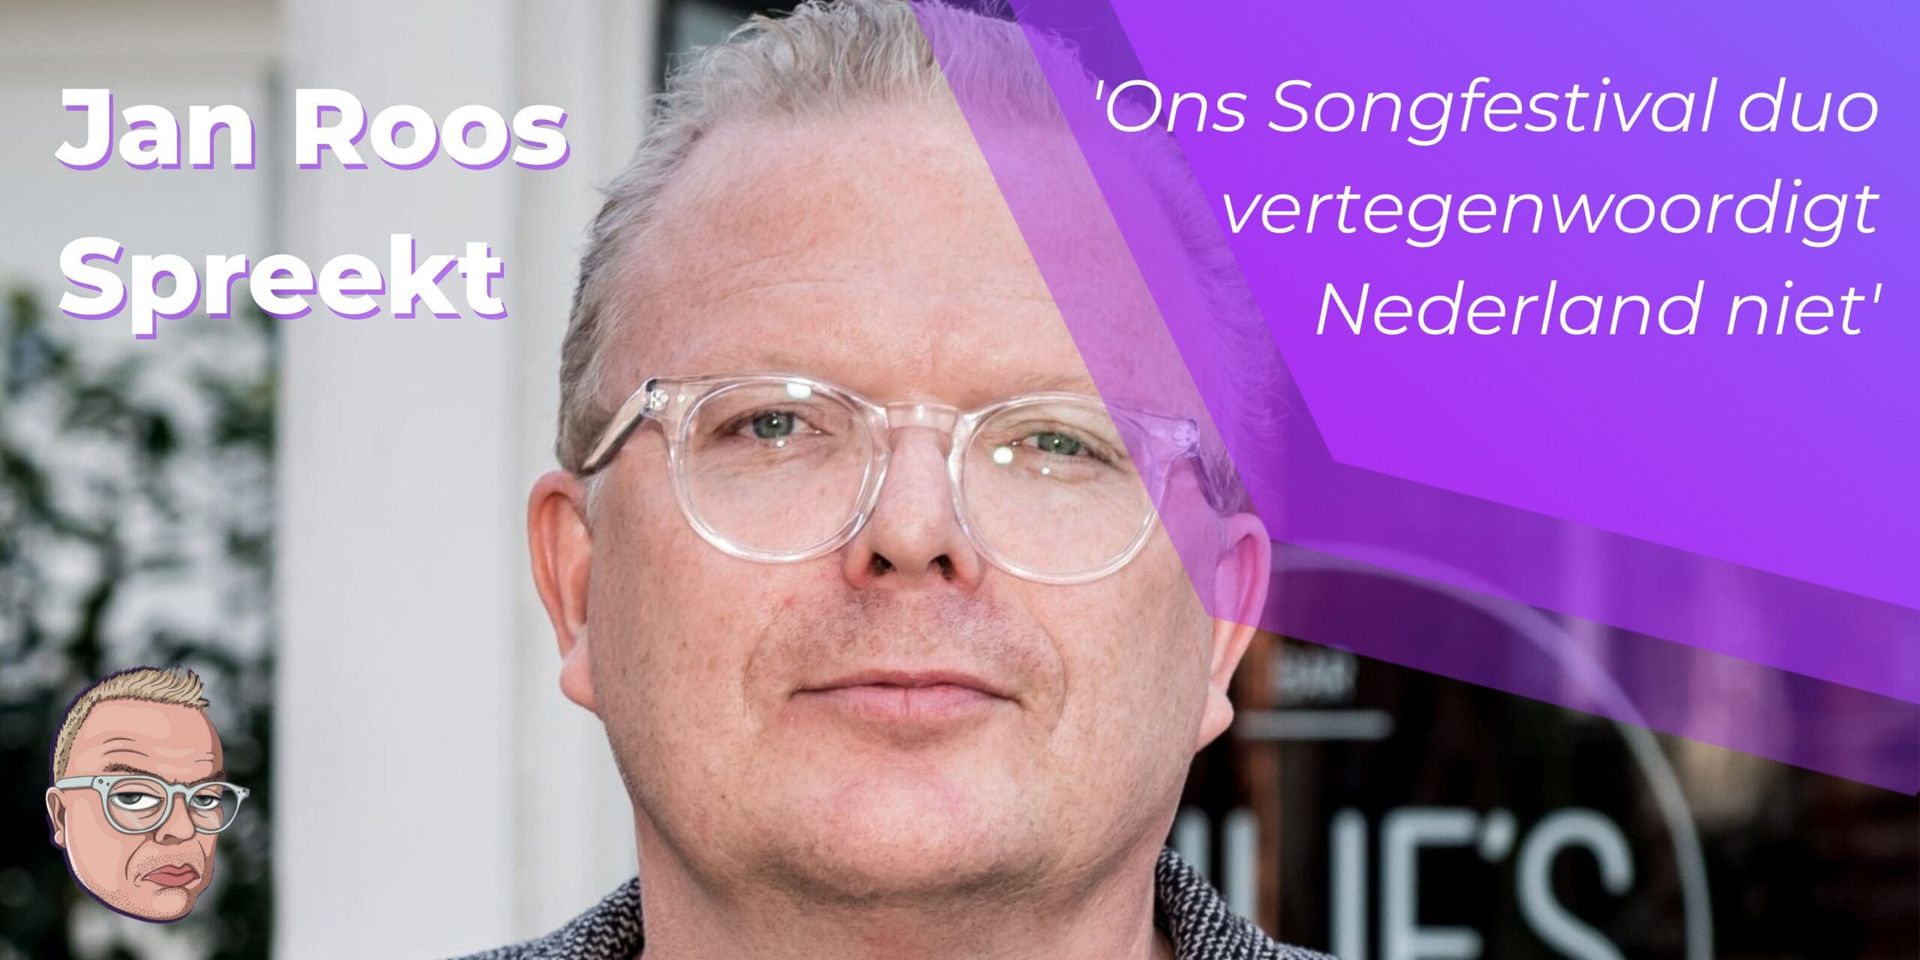 Ons Songfestival duo vertegenwoordigt Nederland niet